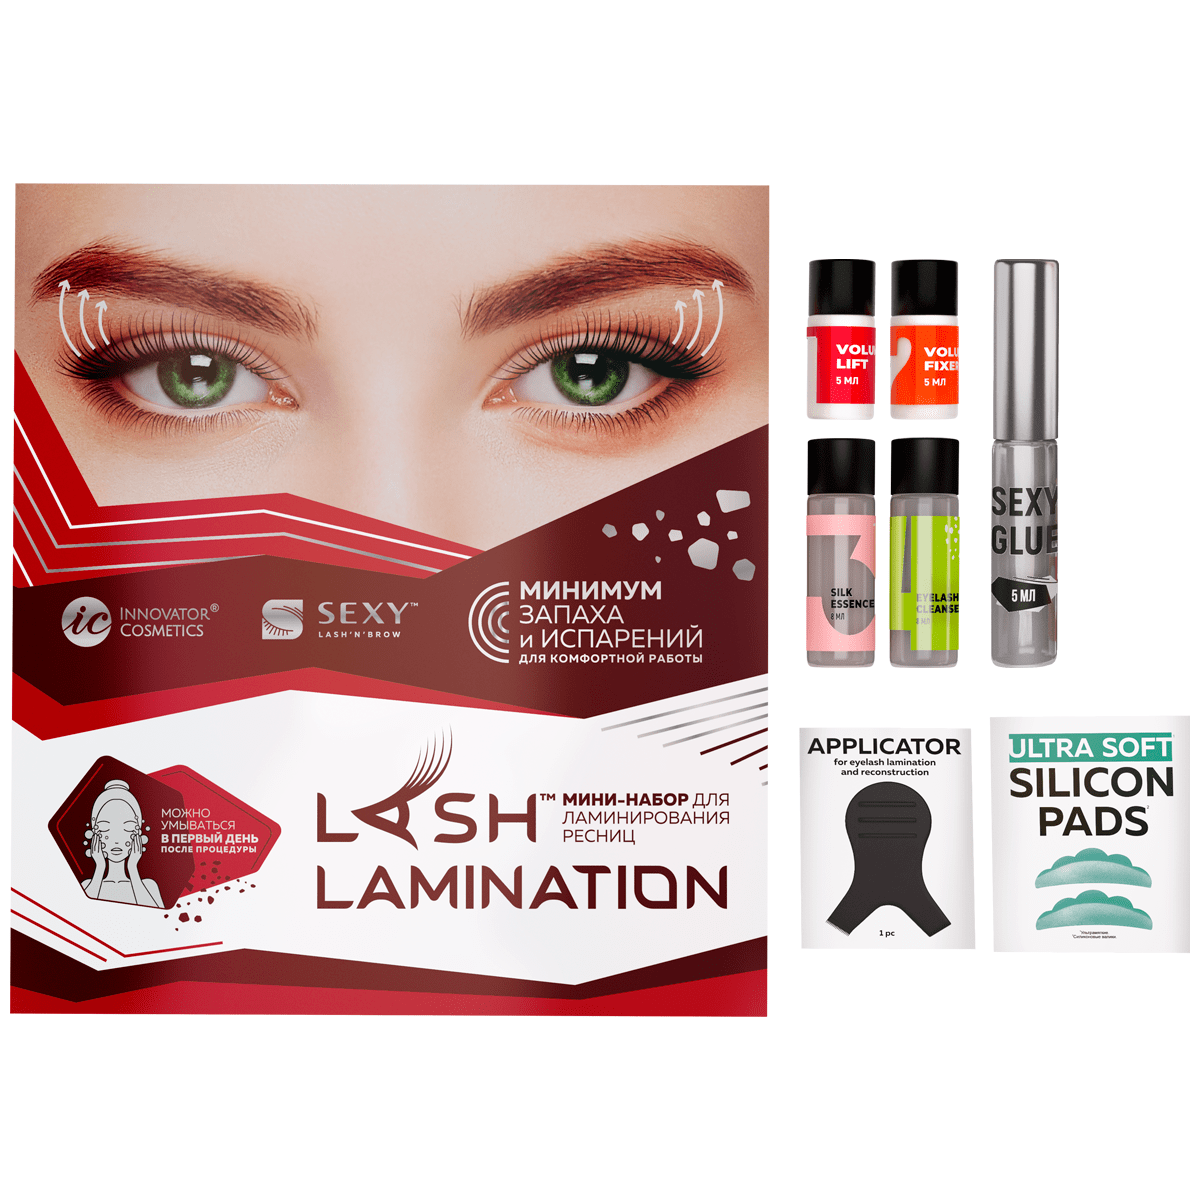 Innovator Cosmetics Набор МИНИ для ламинирования ресниц и бровей SEXY LAMINATION